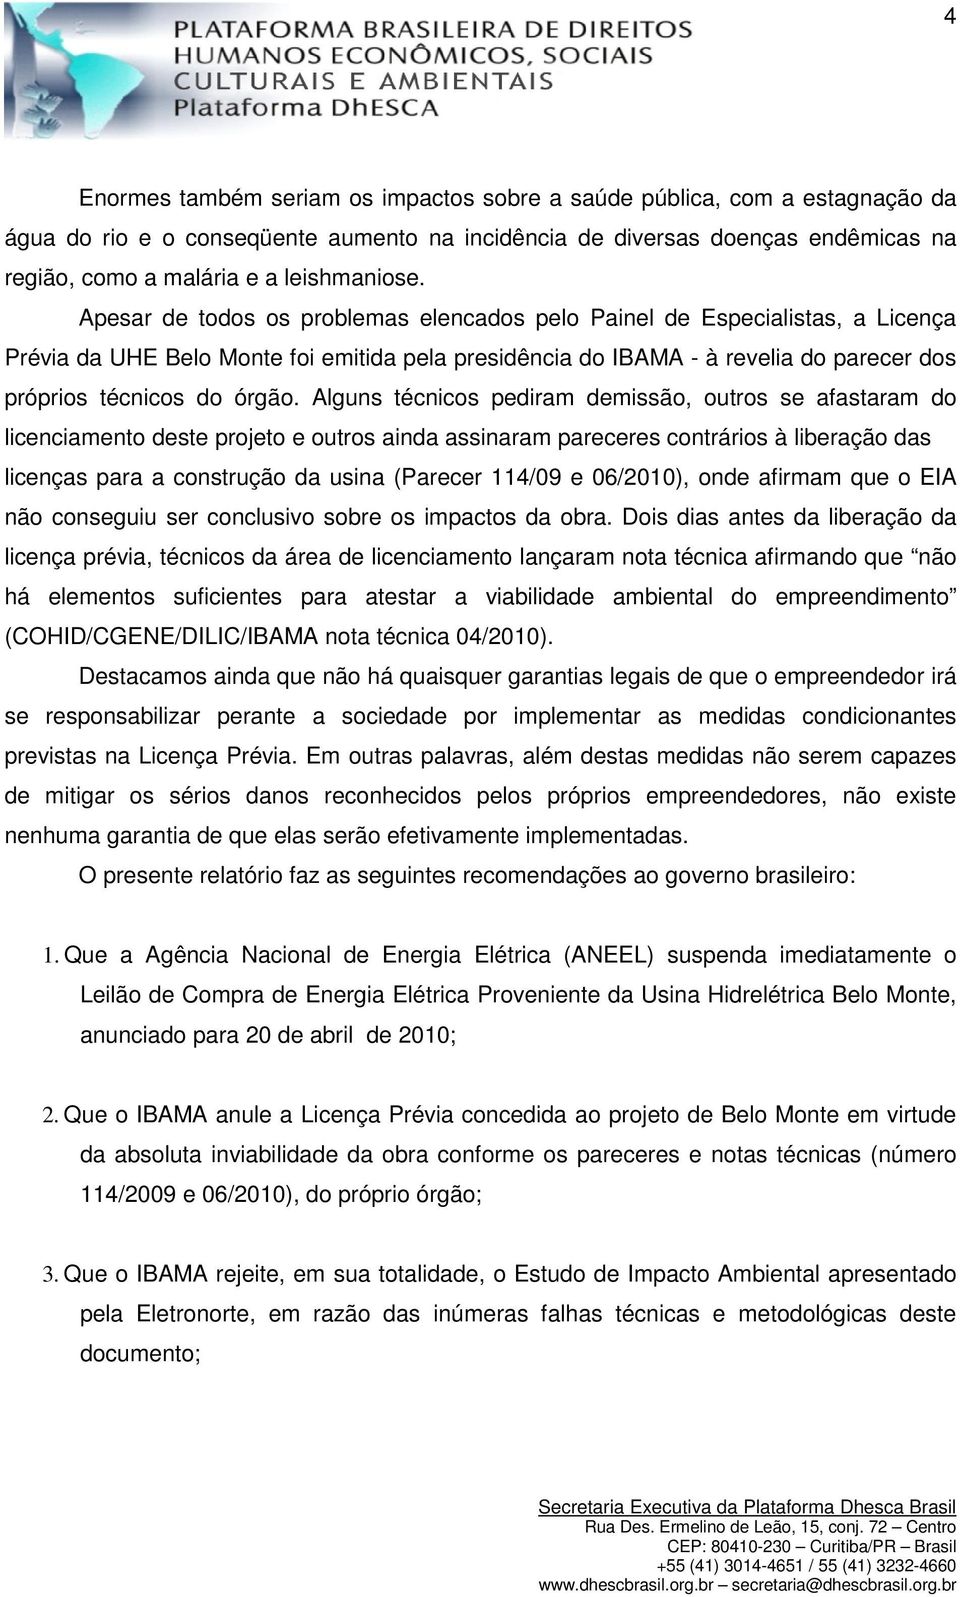 Apesar de todos os problemas elencados pelo Painel de Especialistas, a Licença Prévia da UHE Belo Monte foi emitida pela presidência do IBAMA - à revelia do parecer dos próprios técnicos do órgão.